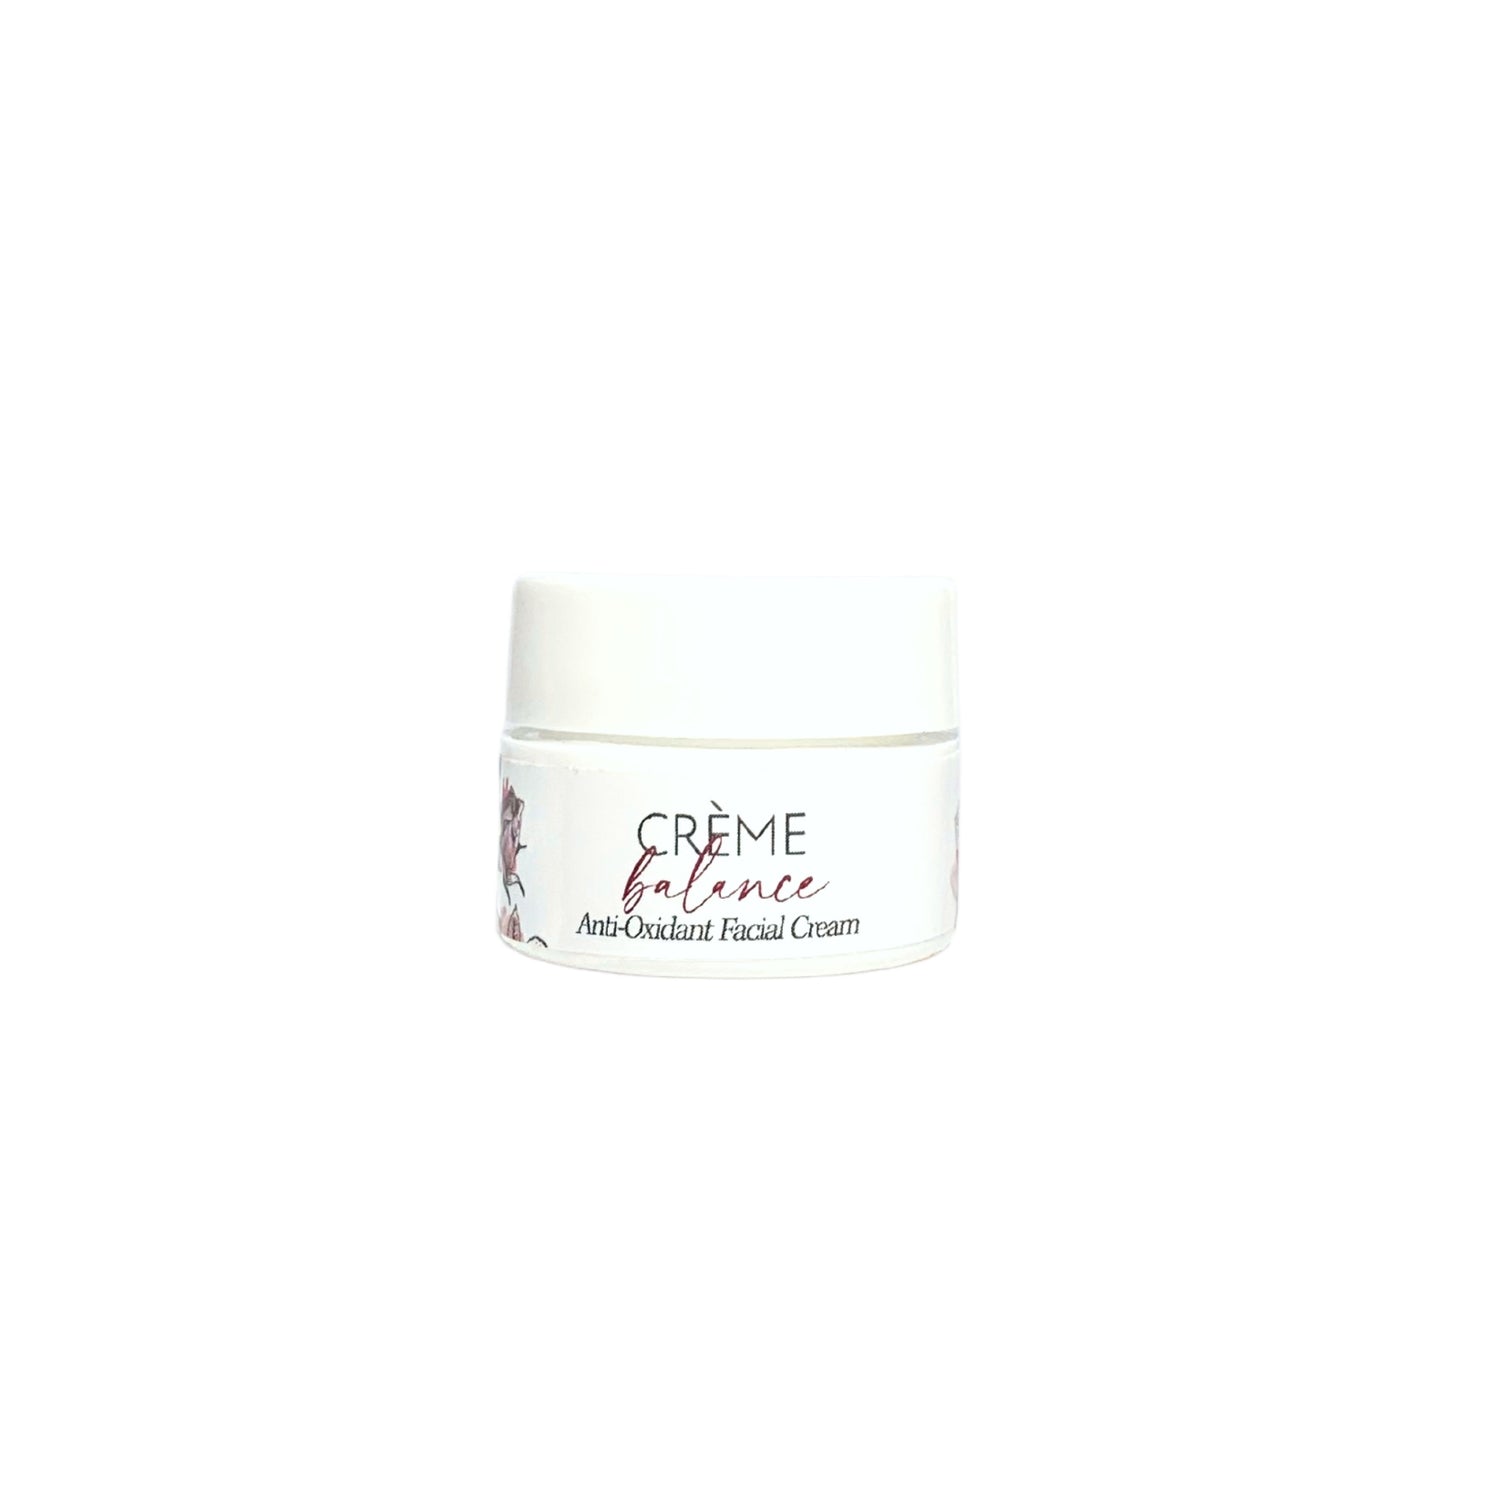 crème balance - anti-oxidant facial cream 10 ml